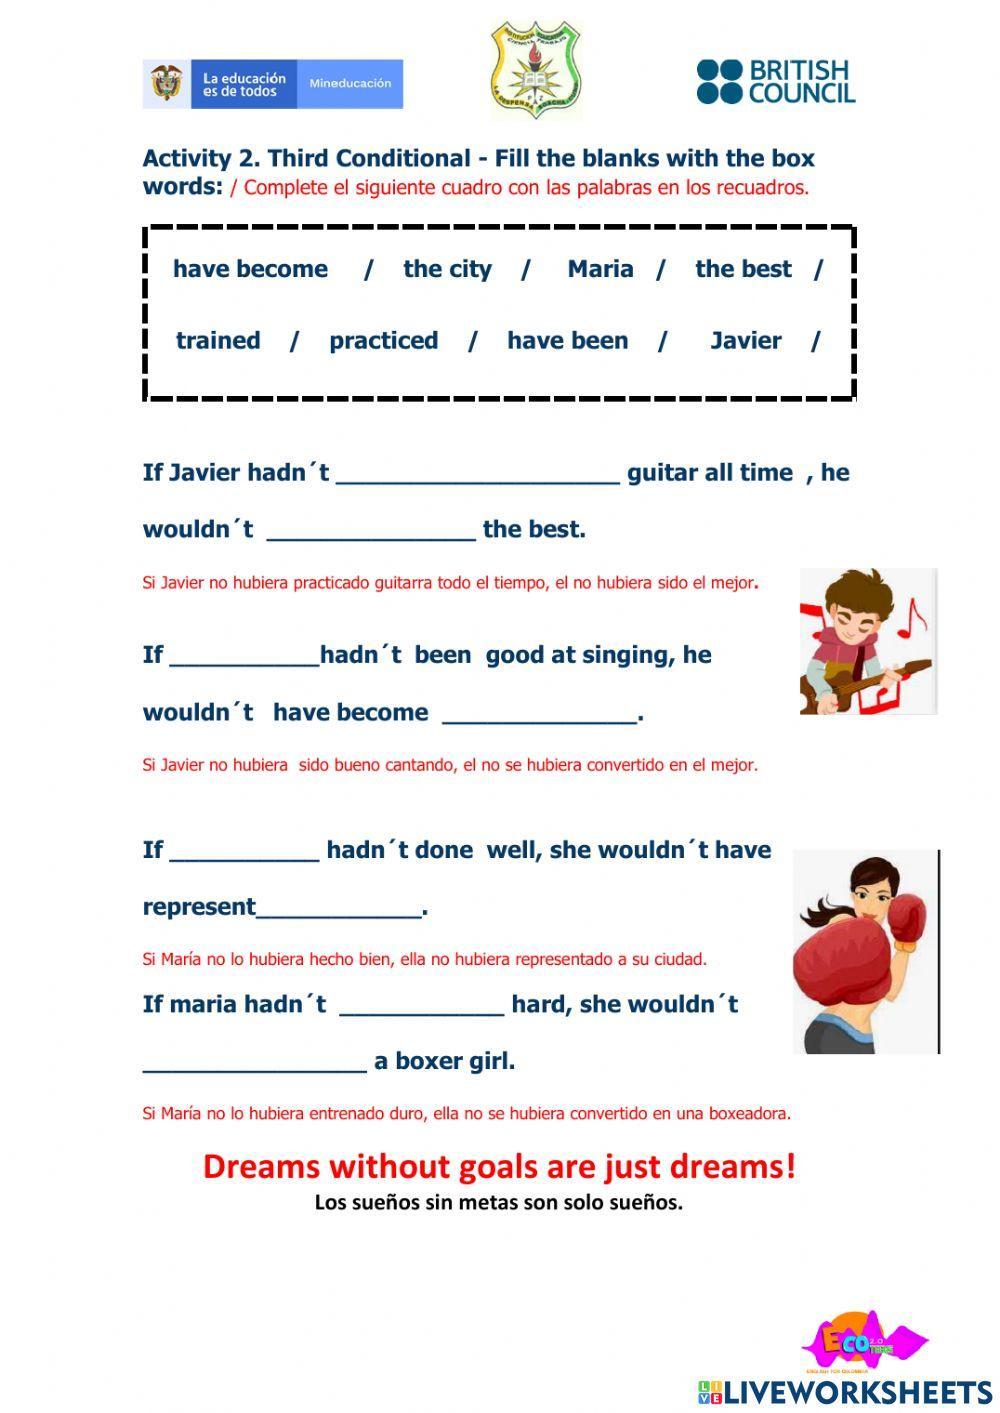 Dreams and goals